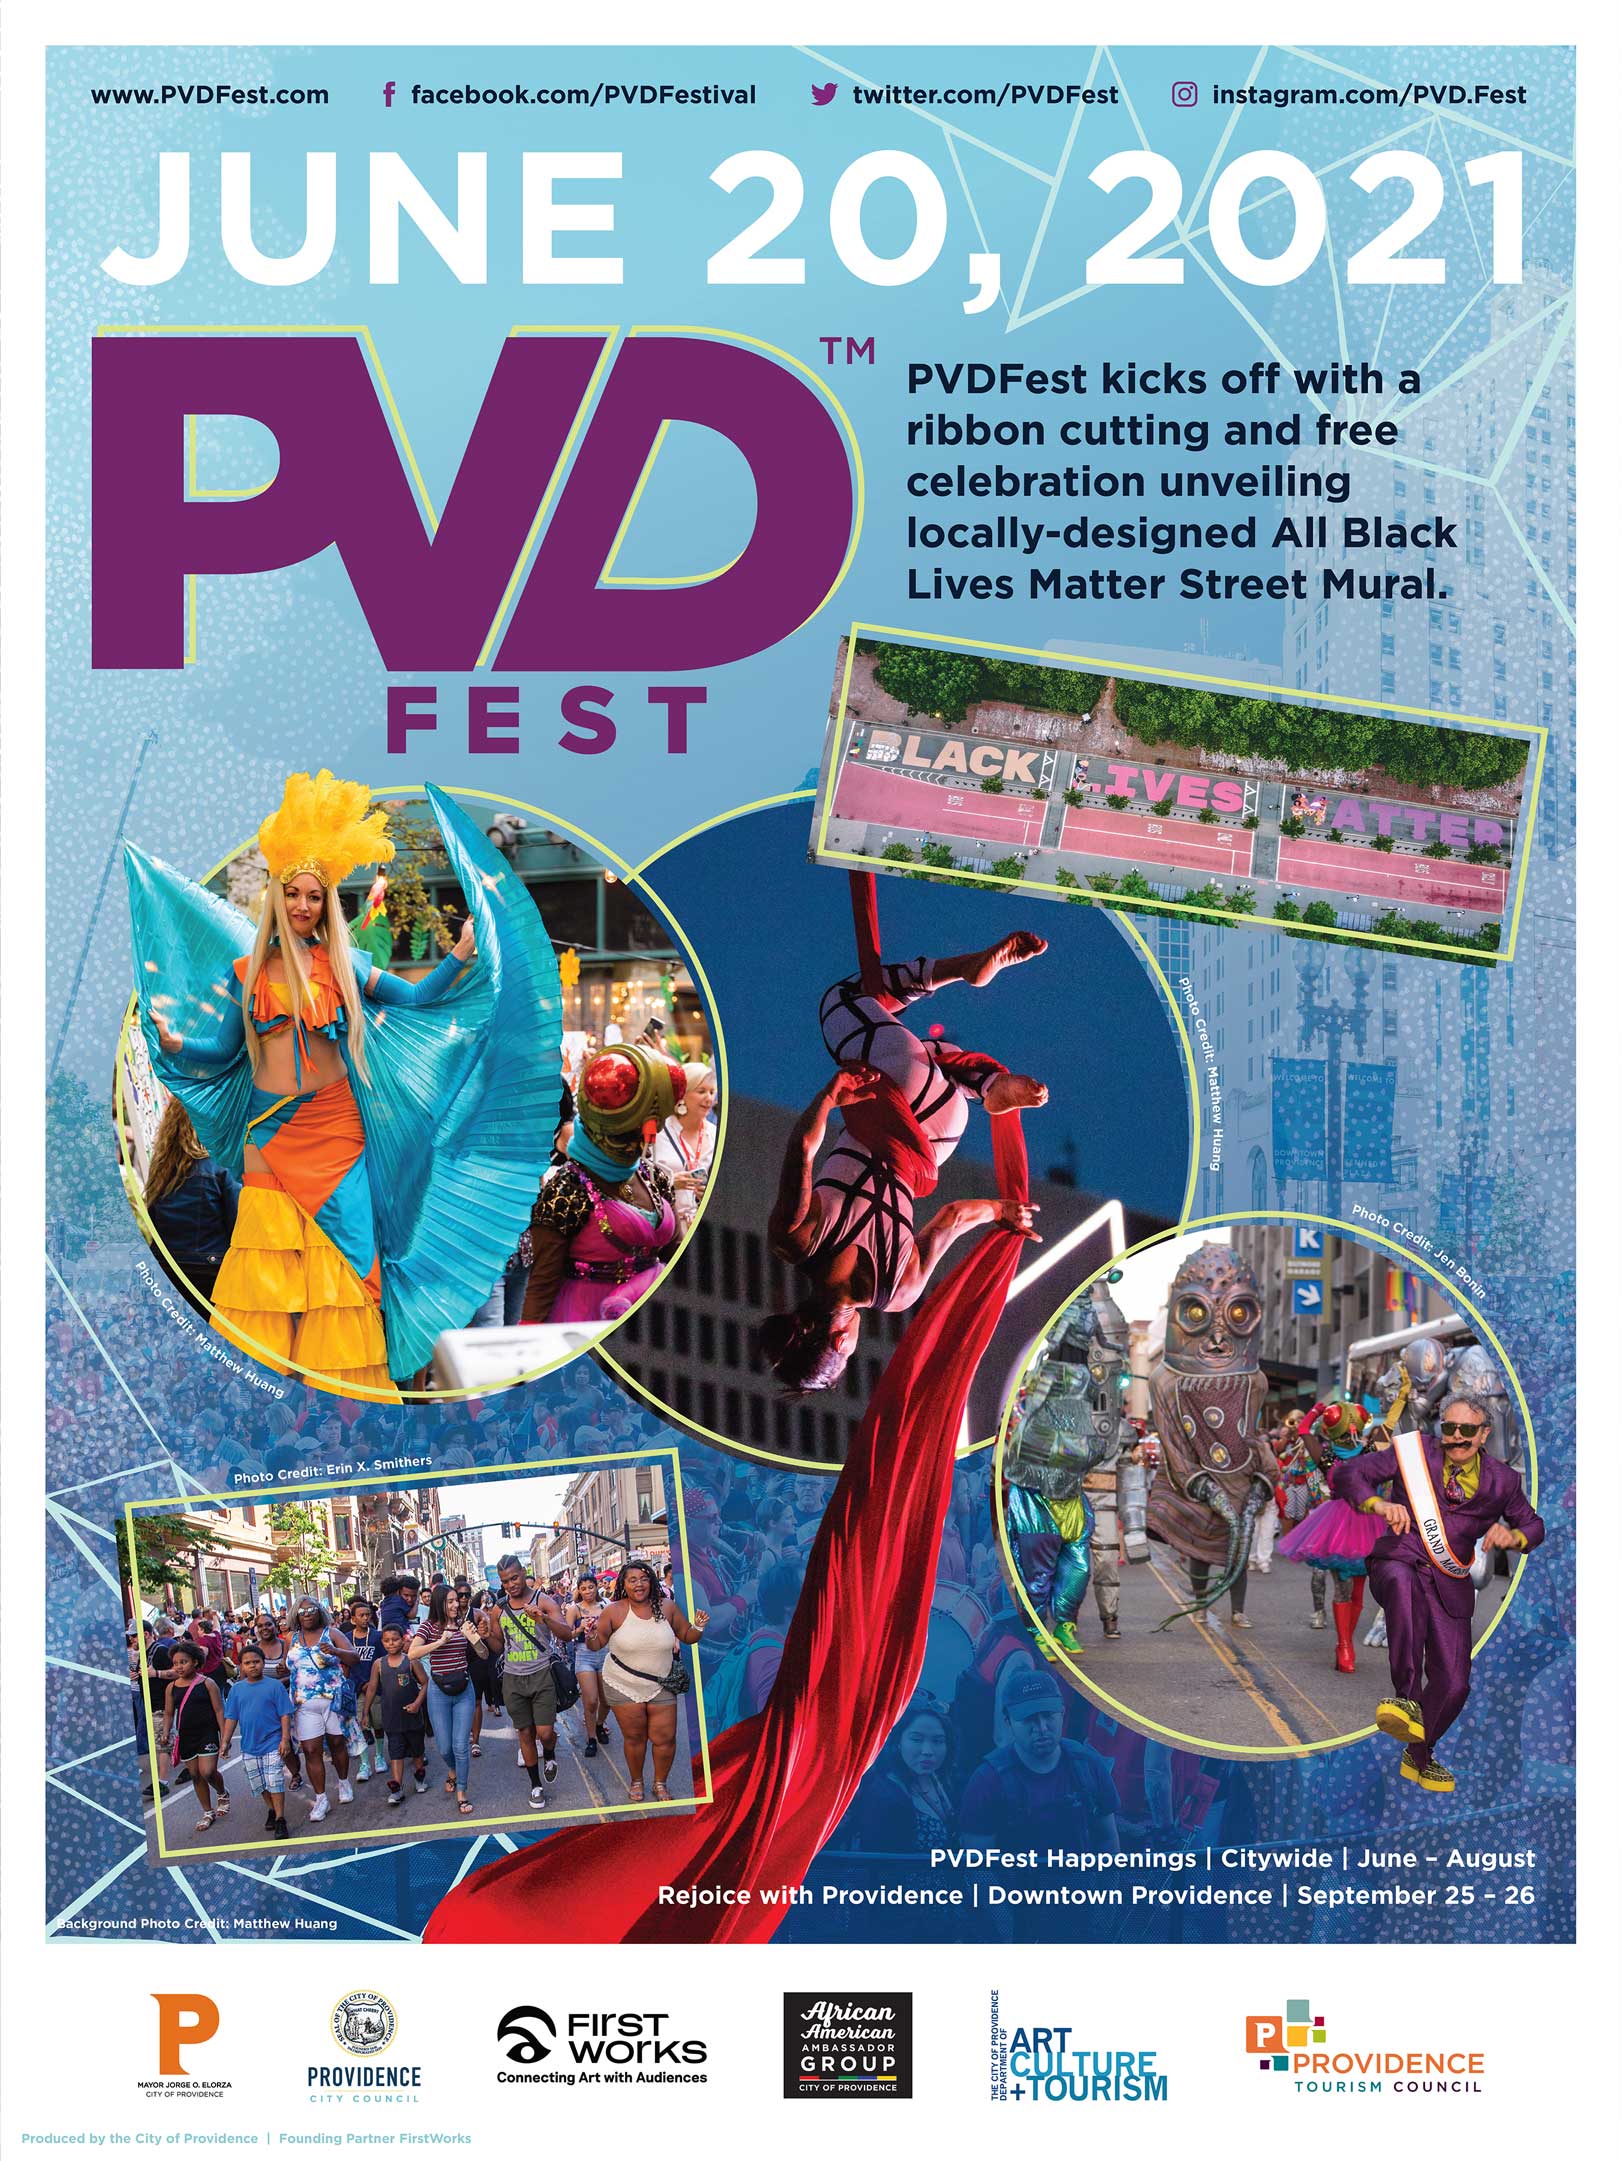 PVDFest Street Mural Celebration - PVDFEST